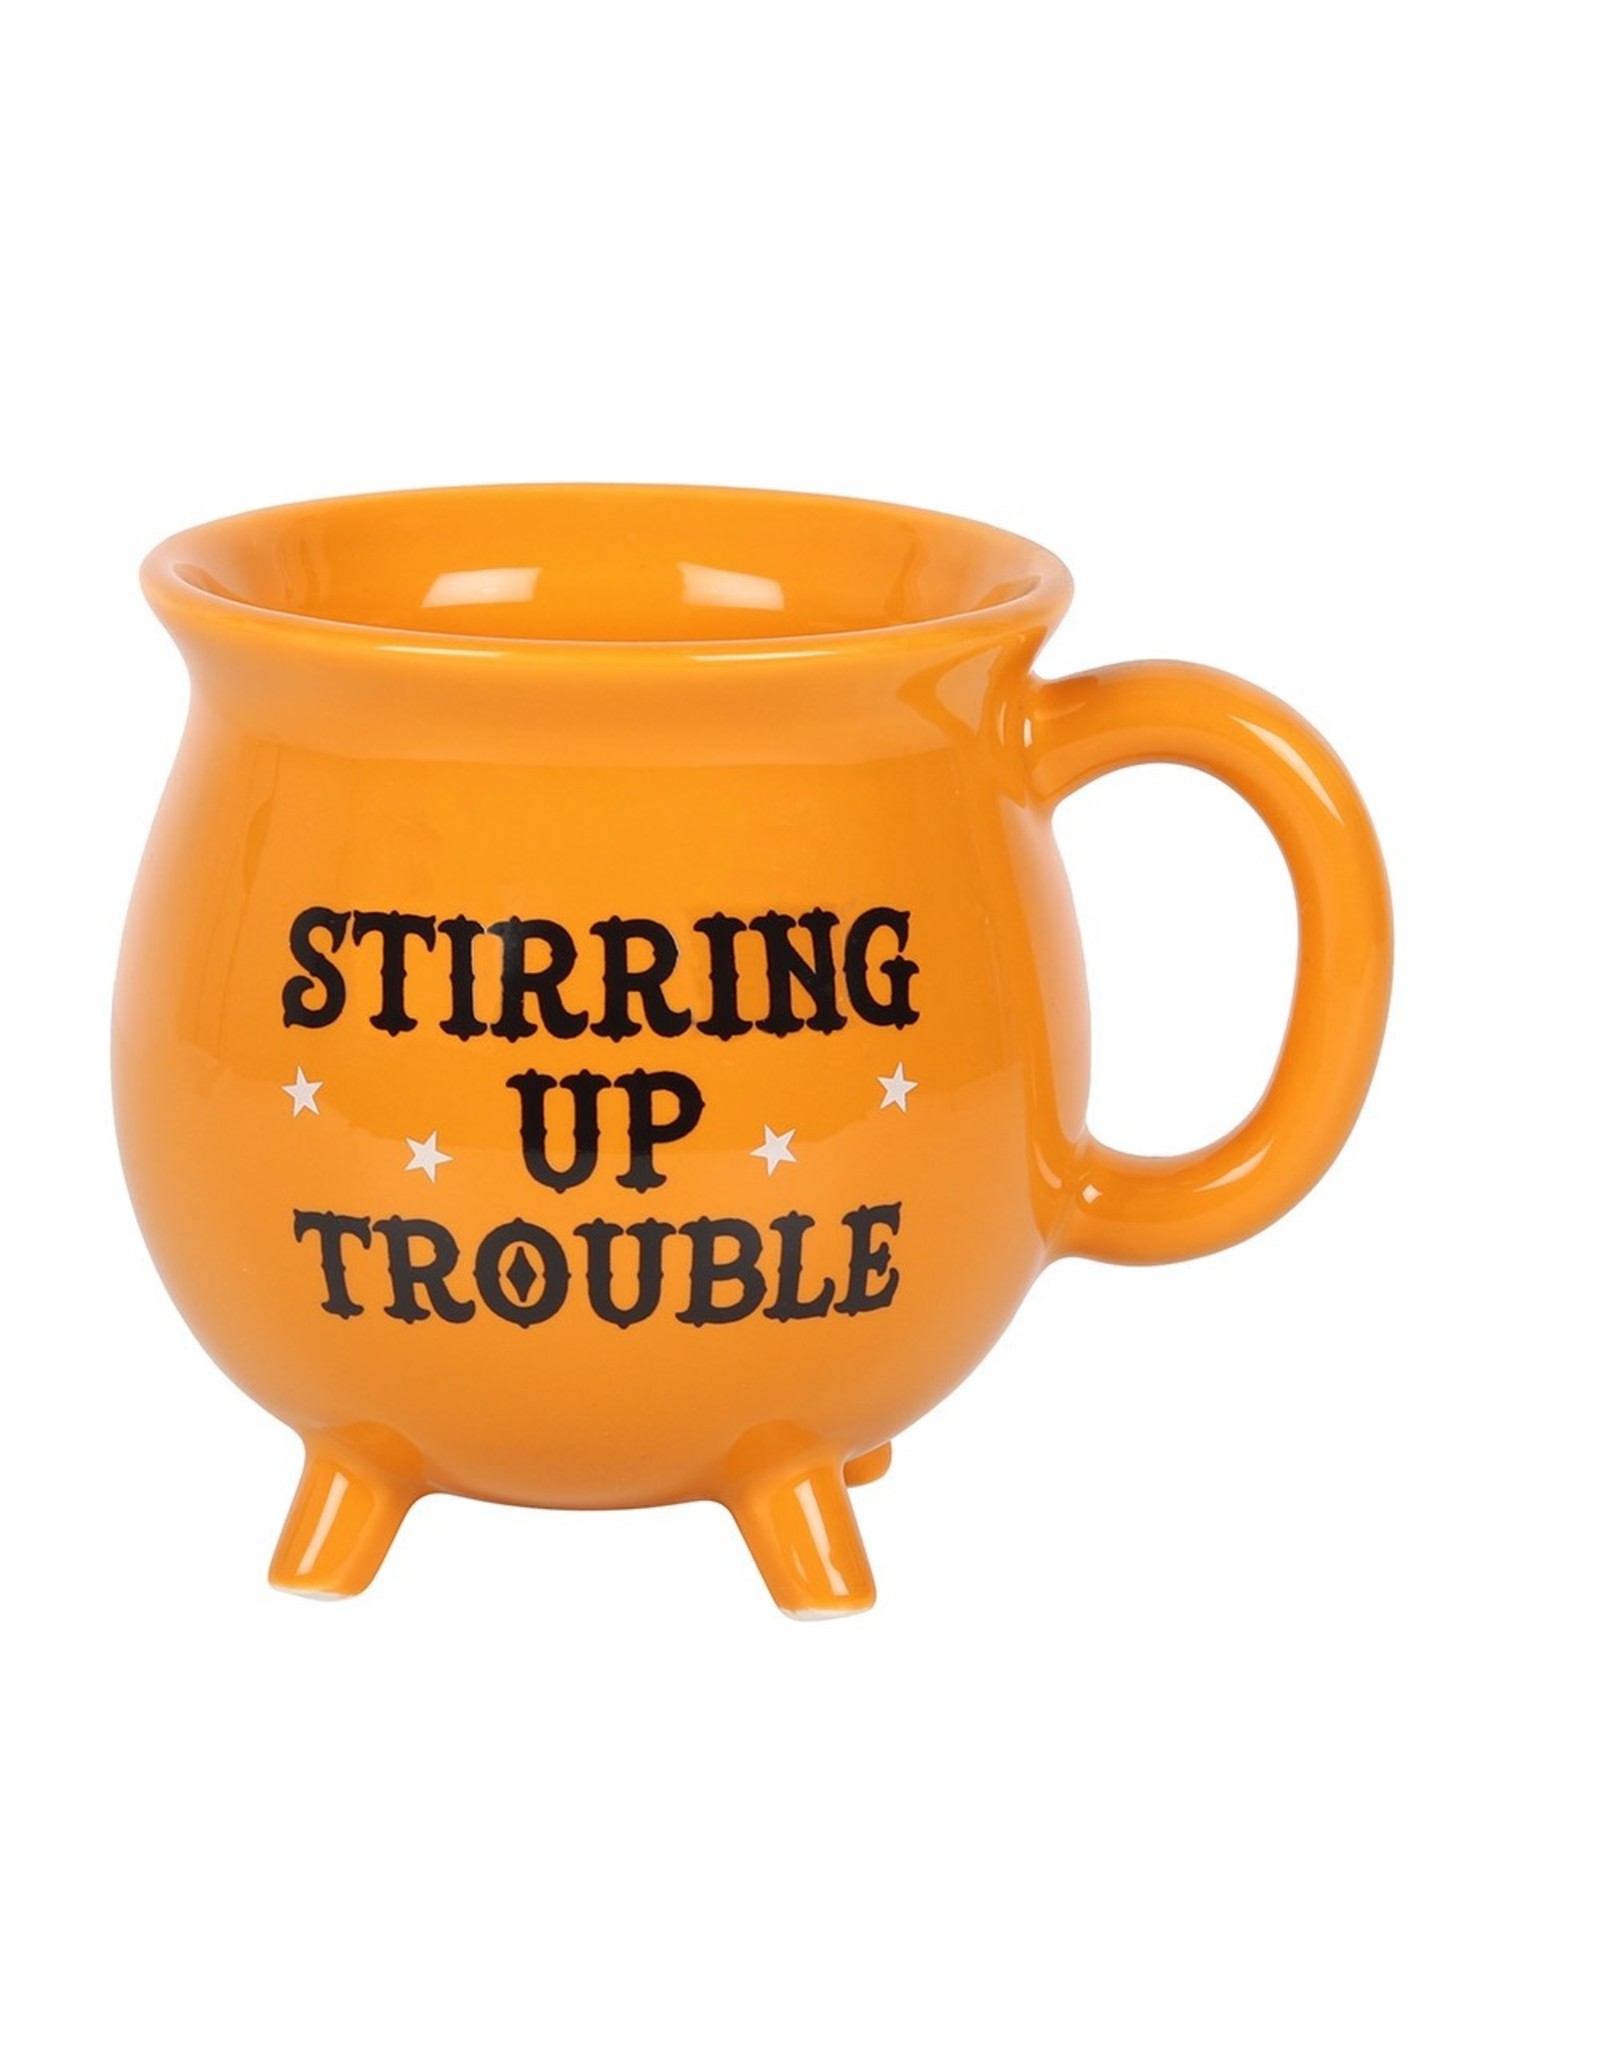 Something Different Giftware & Lifestyle - Stirring up Trouble Cauldron mug